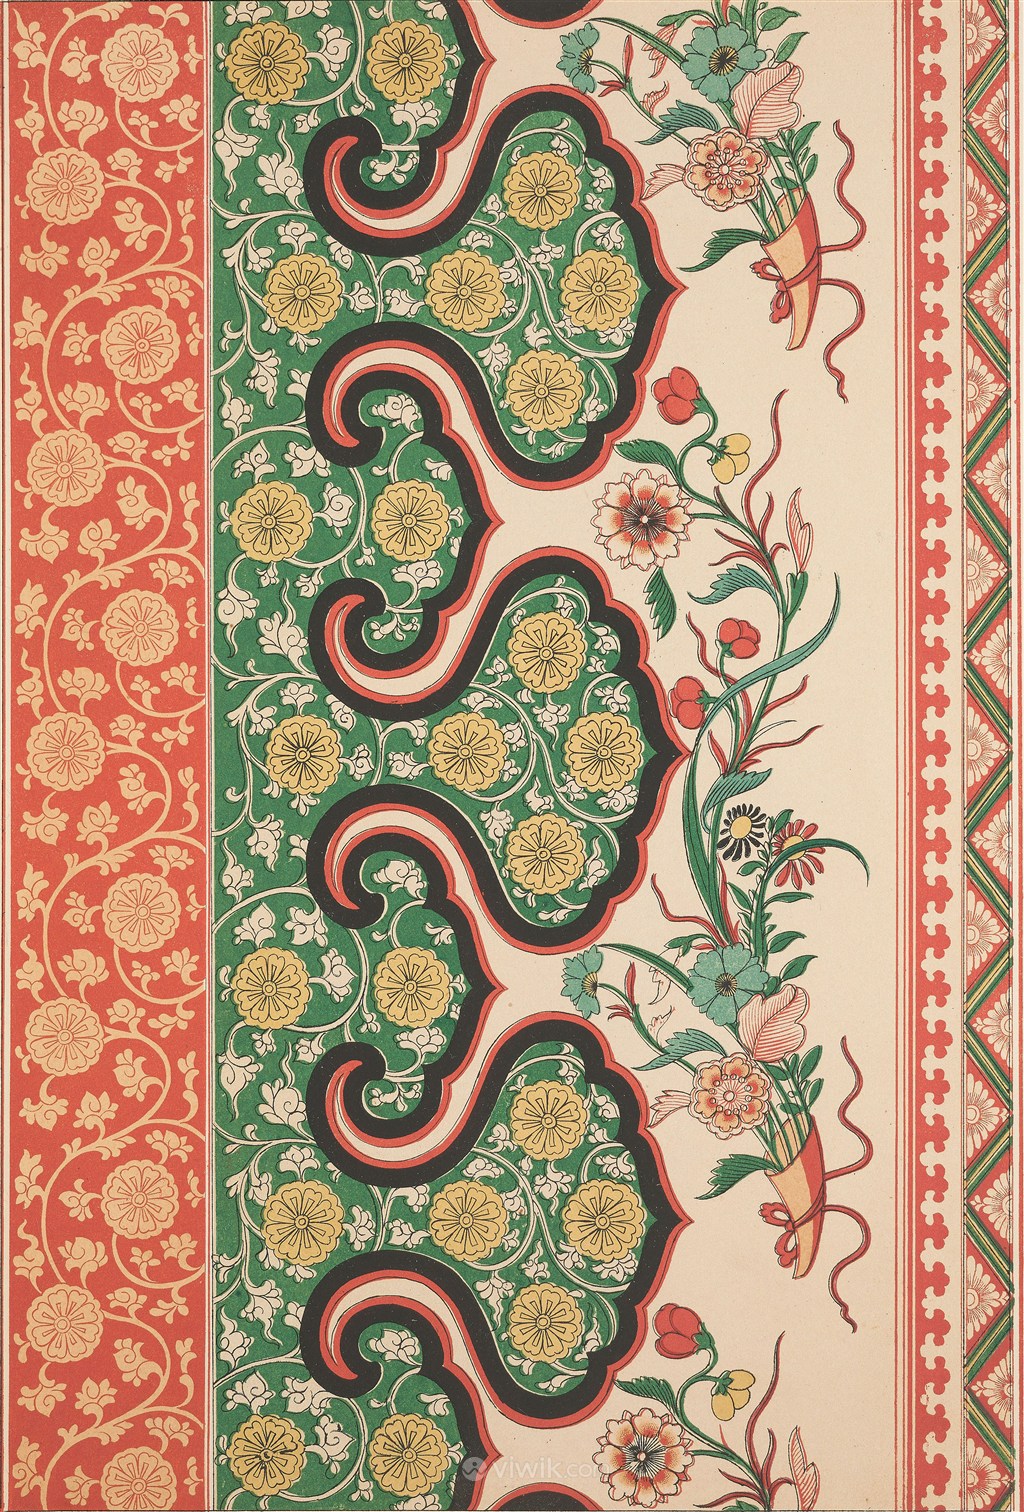 鲜花菊花中式传统纹样集锦中国风图片